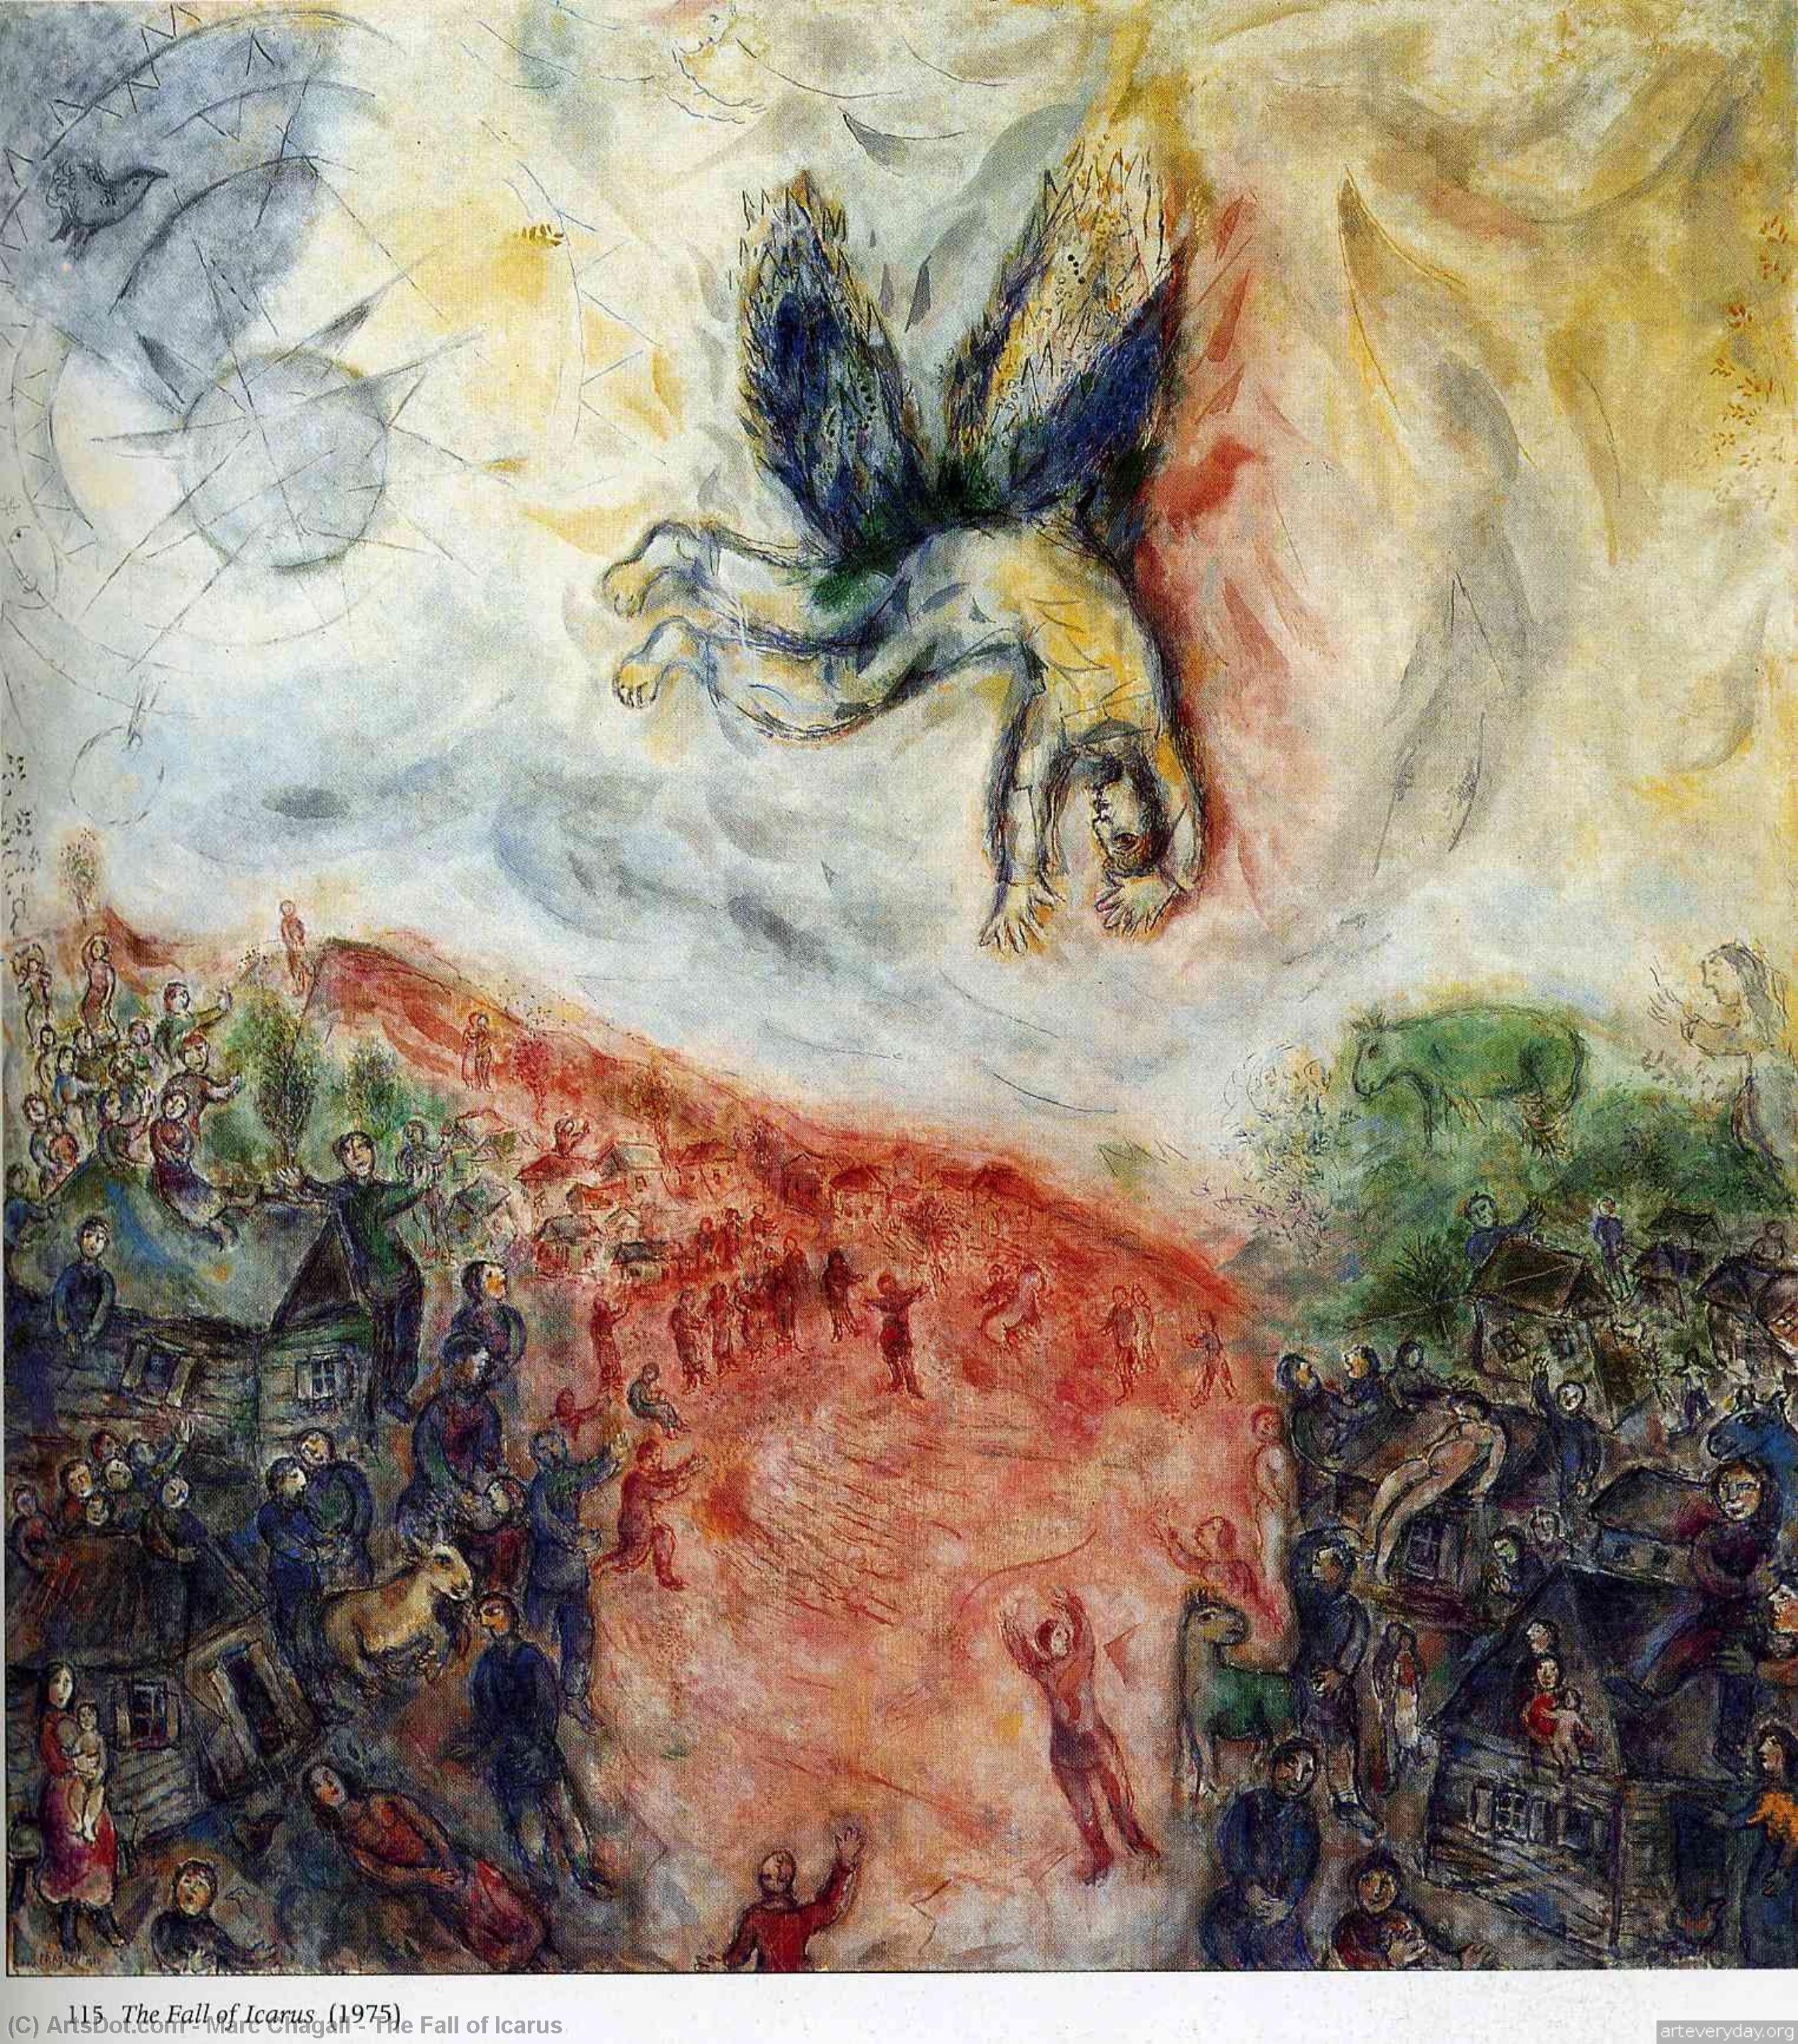 Compra Riproduzioni D'arte Del Museo La caduta di Icarus, 1975 di Marc Chagall (Ispirato da) (1887-1985, Belarus) | ArtsDot.com